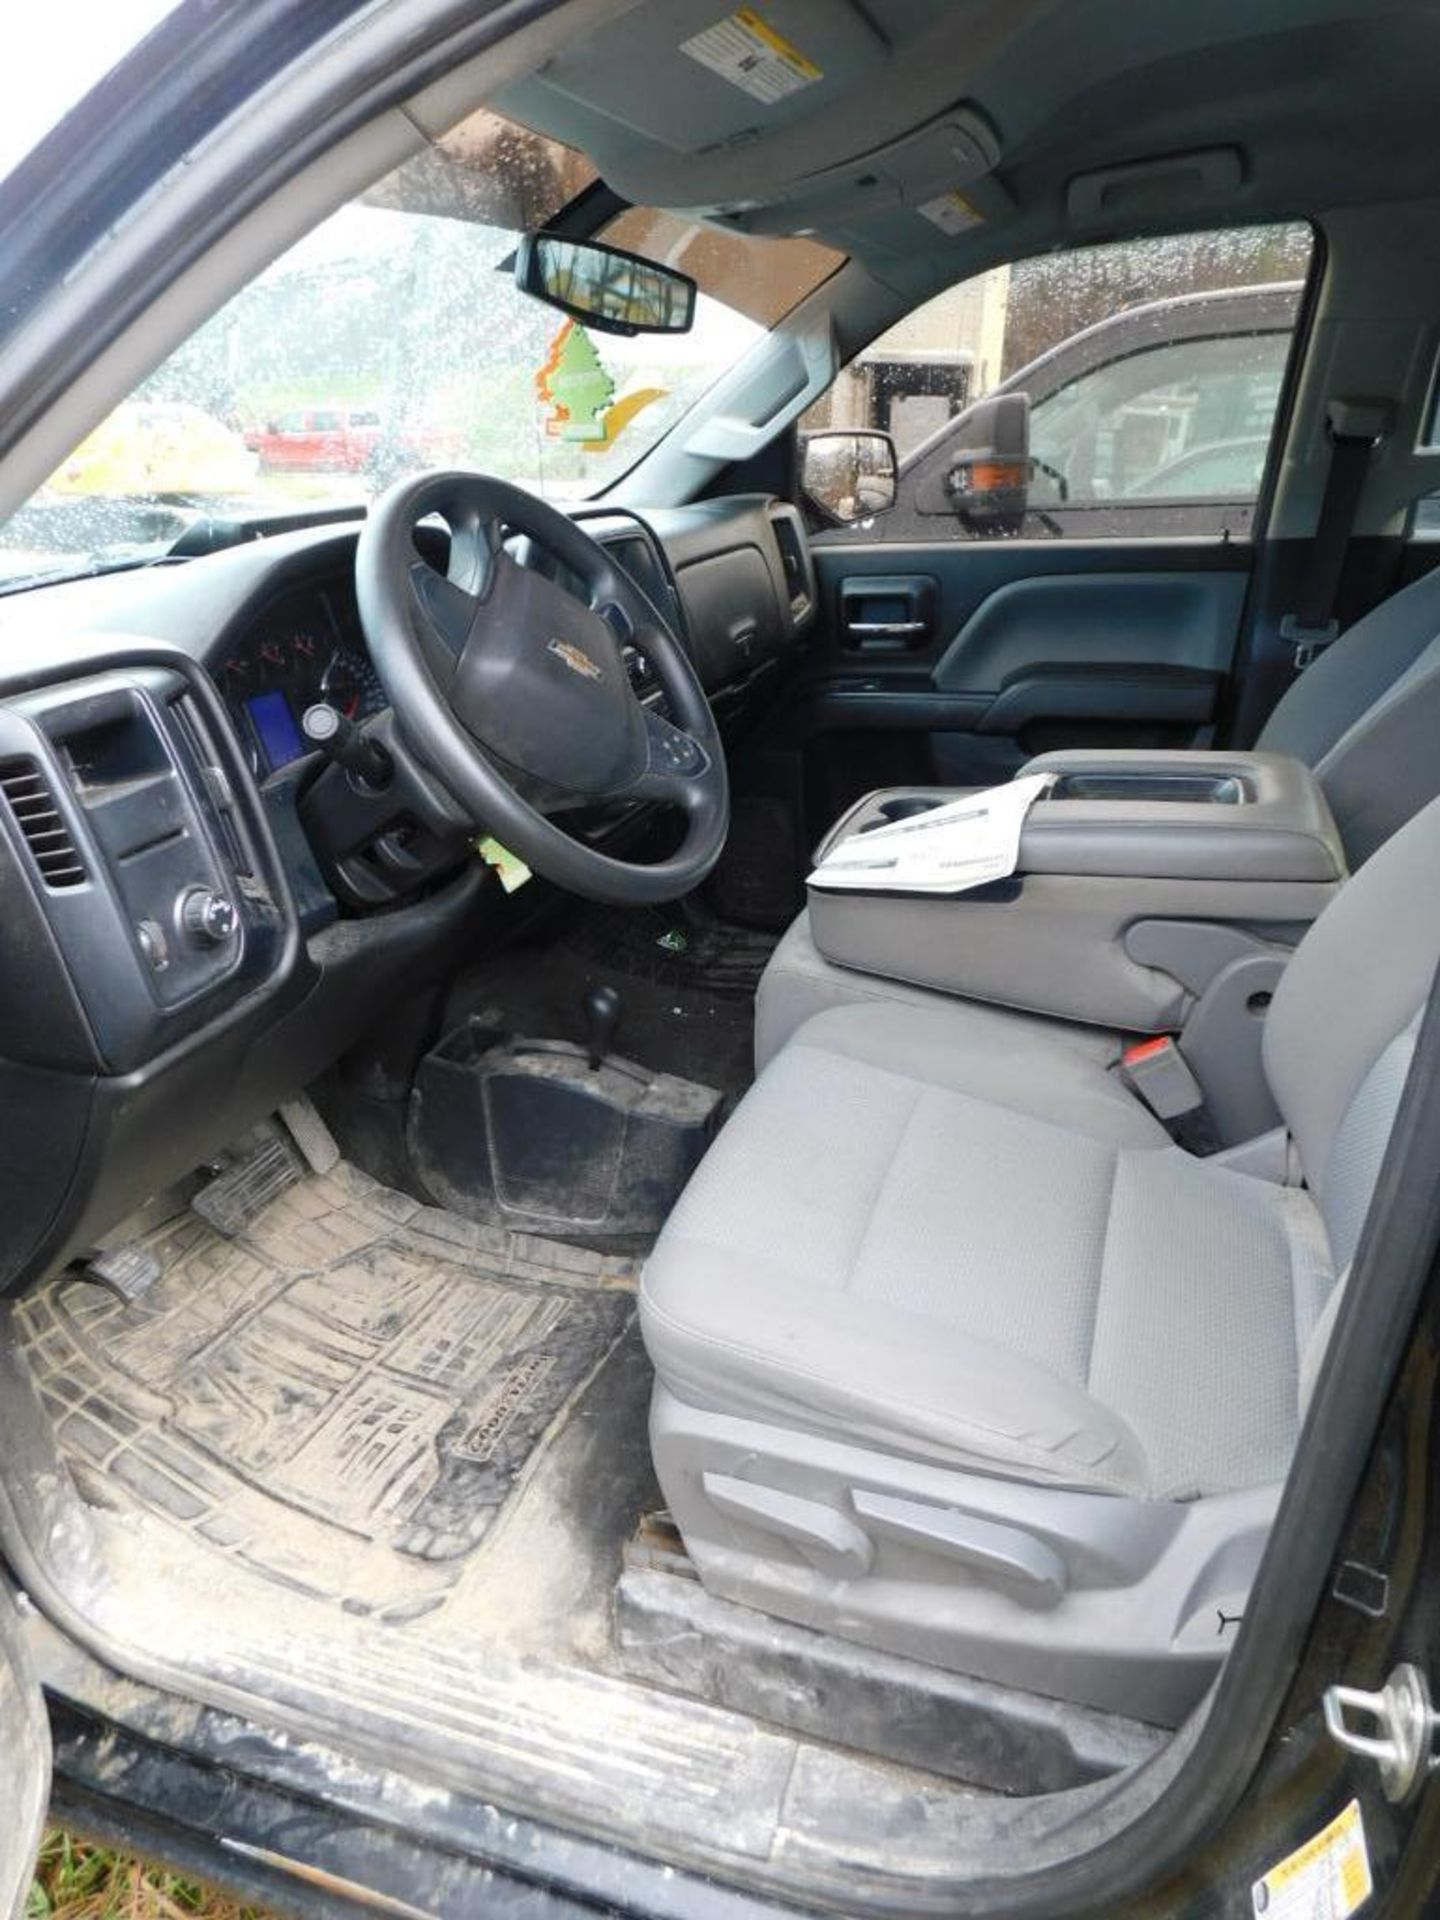 2018 Chevy Silverado 1500 Custom Crew Cab, 4-Wheel Drive, 5.3 Liter, Ecotec 3, V8 Gasoline Motor, Au - Image 8 of 11